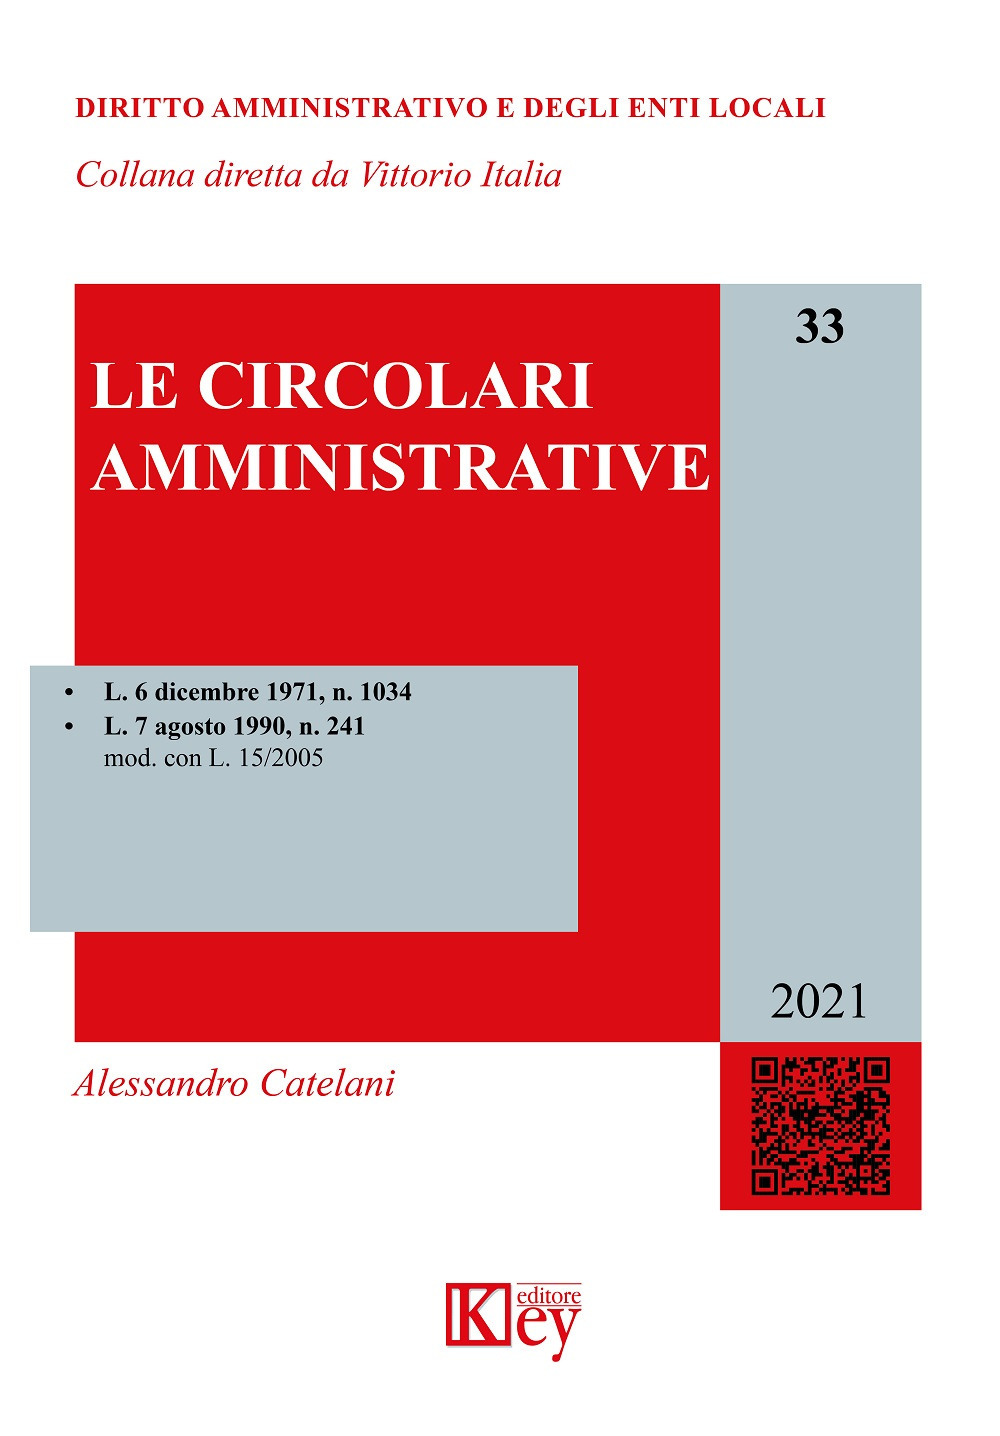 Libri Alessandro Catelani - Le Circolari Amministrative NUOVO SIGILLATO, EDIZIONE DEL 11/01/2021 SUBITO DISPONIBILE